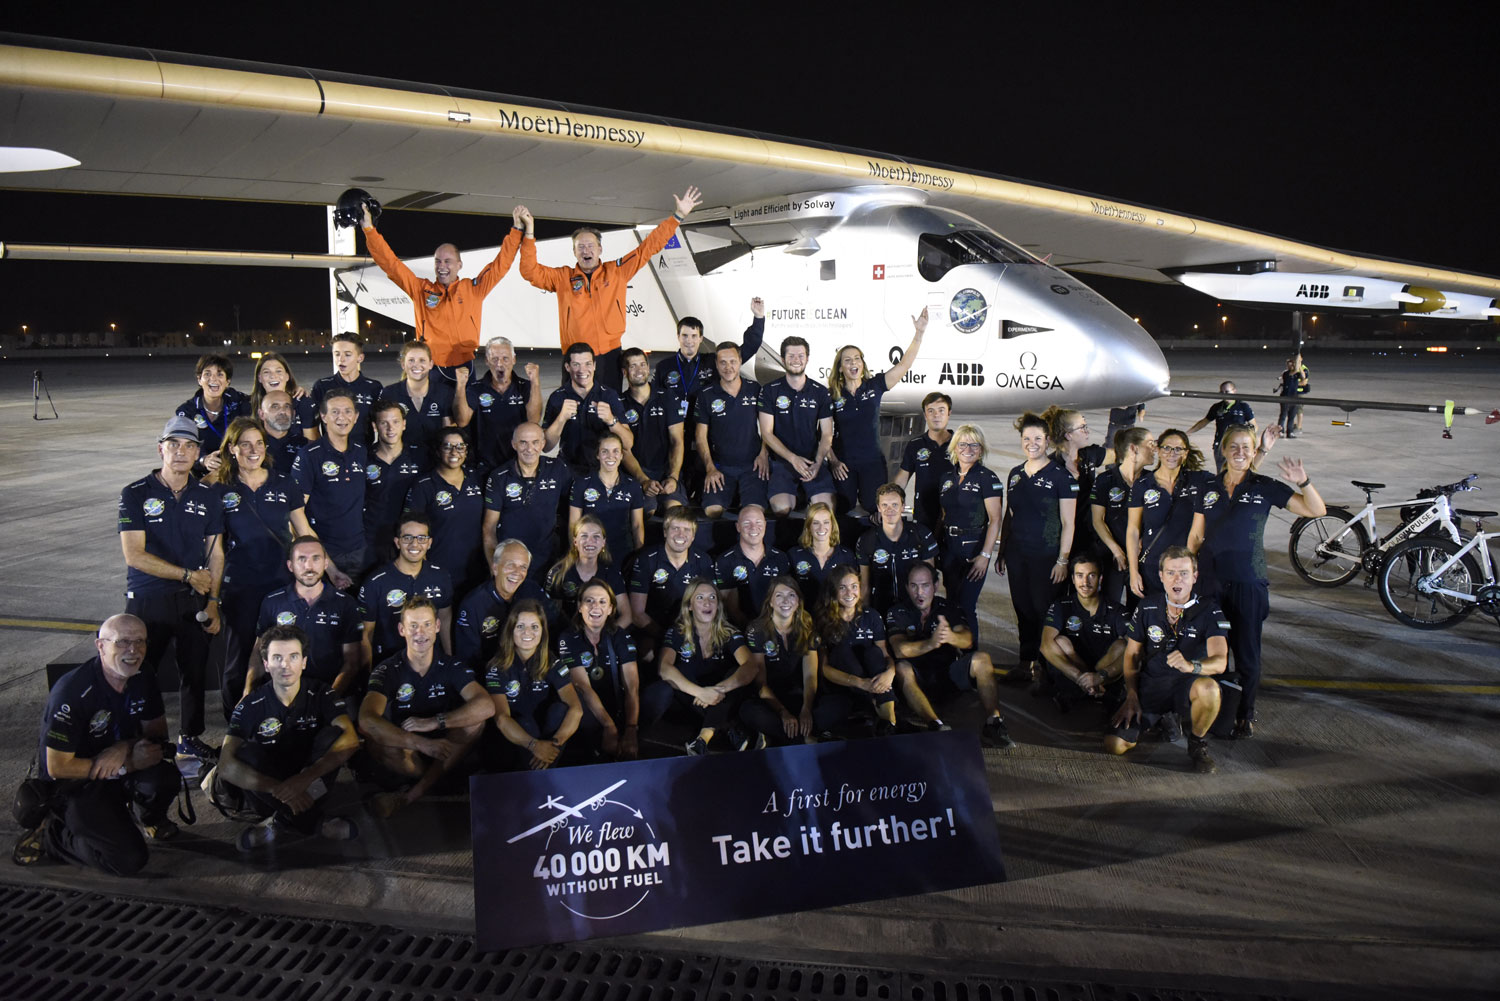 43.000 kms sans une goutte de pétrole : le pari fou de faire le tour du monde en avion solaire est gagné © Solar Impulse